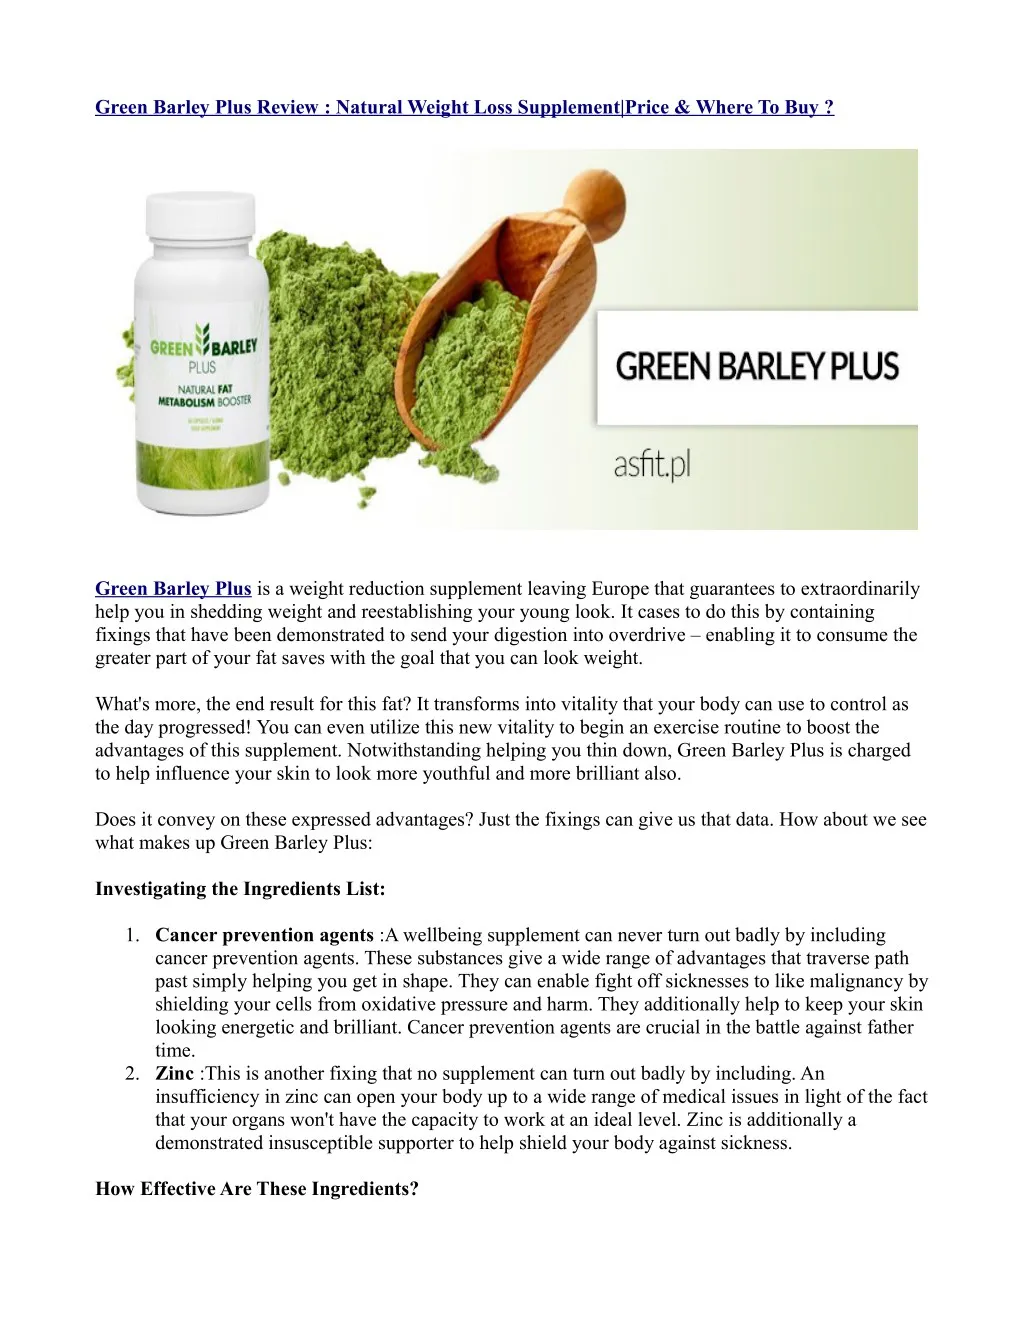 green barley plus review natural weight loss